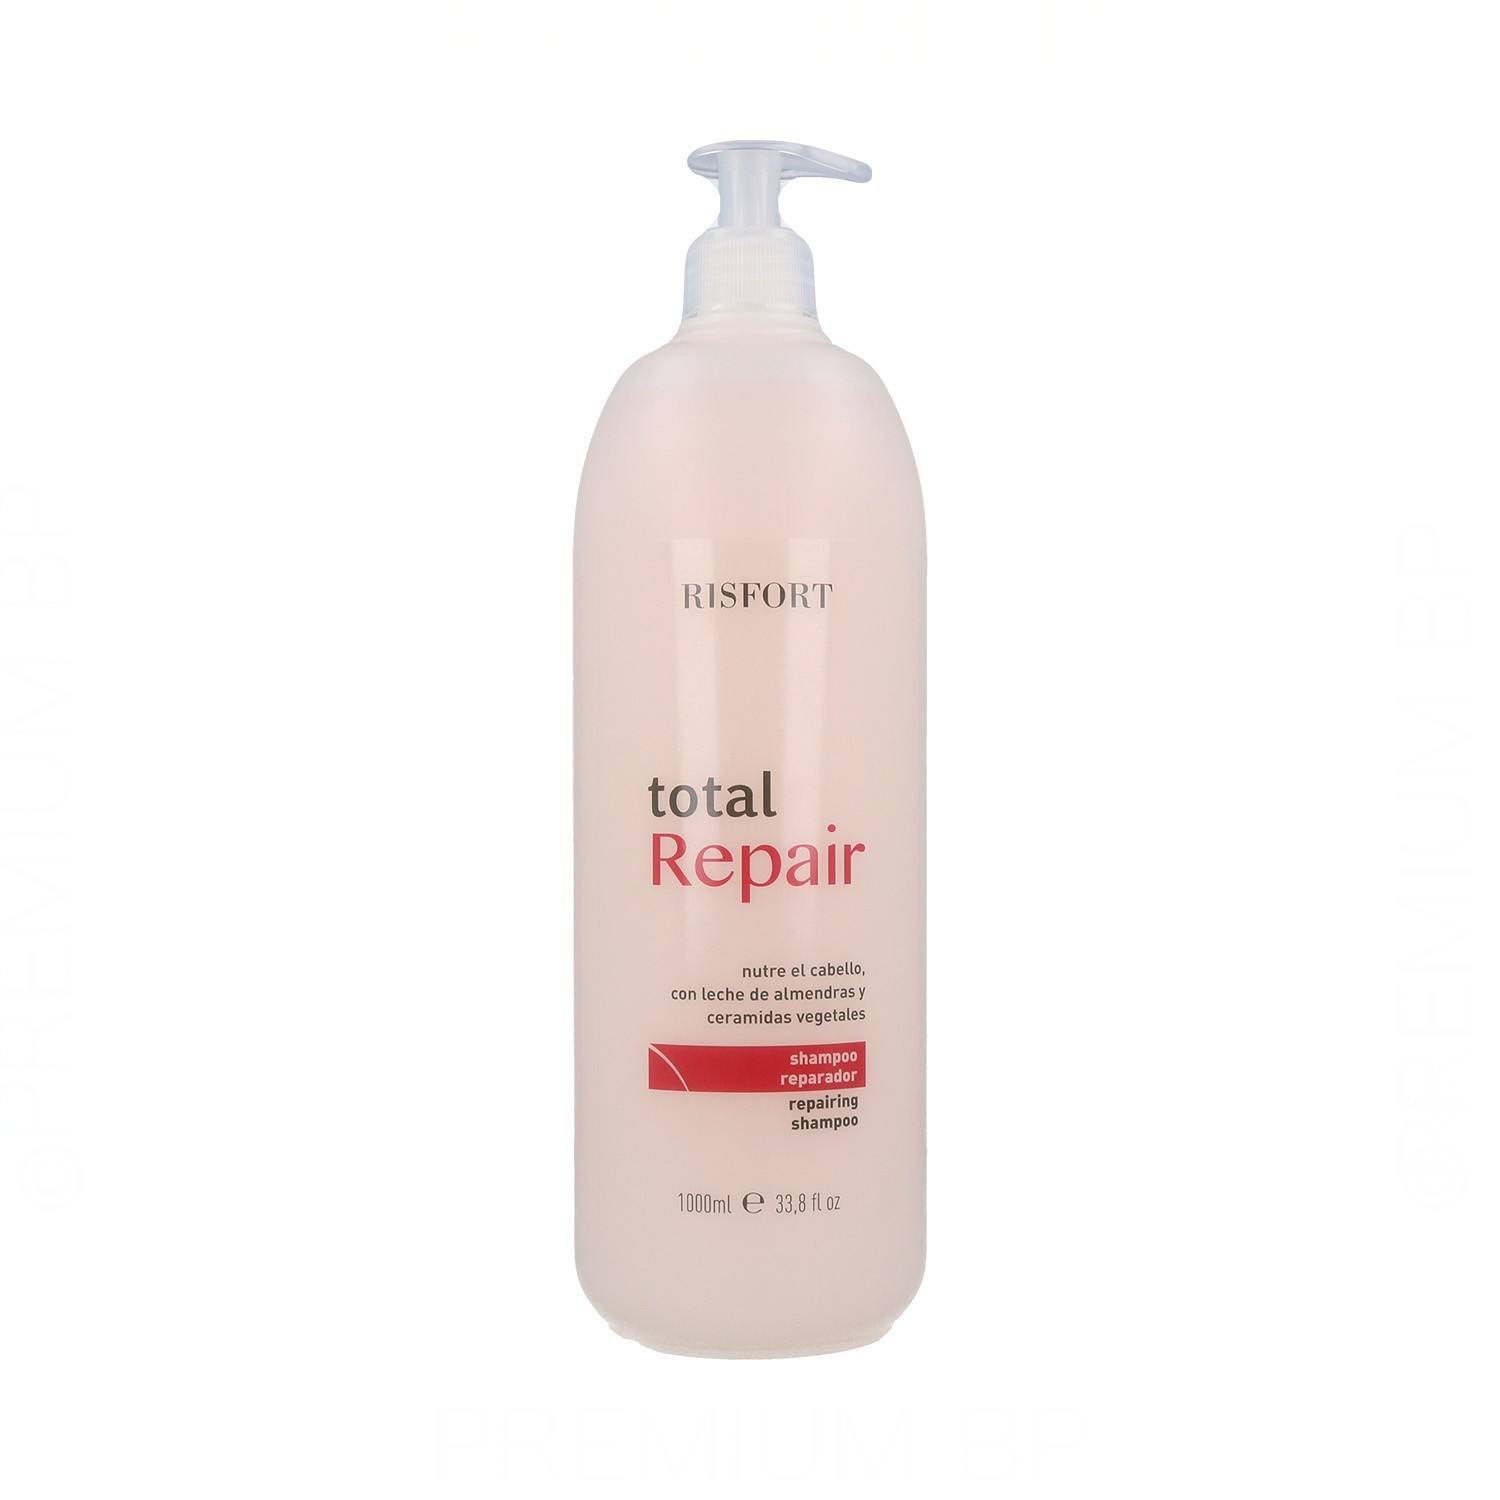 Risfort Total Repair Xampú 1000 ml